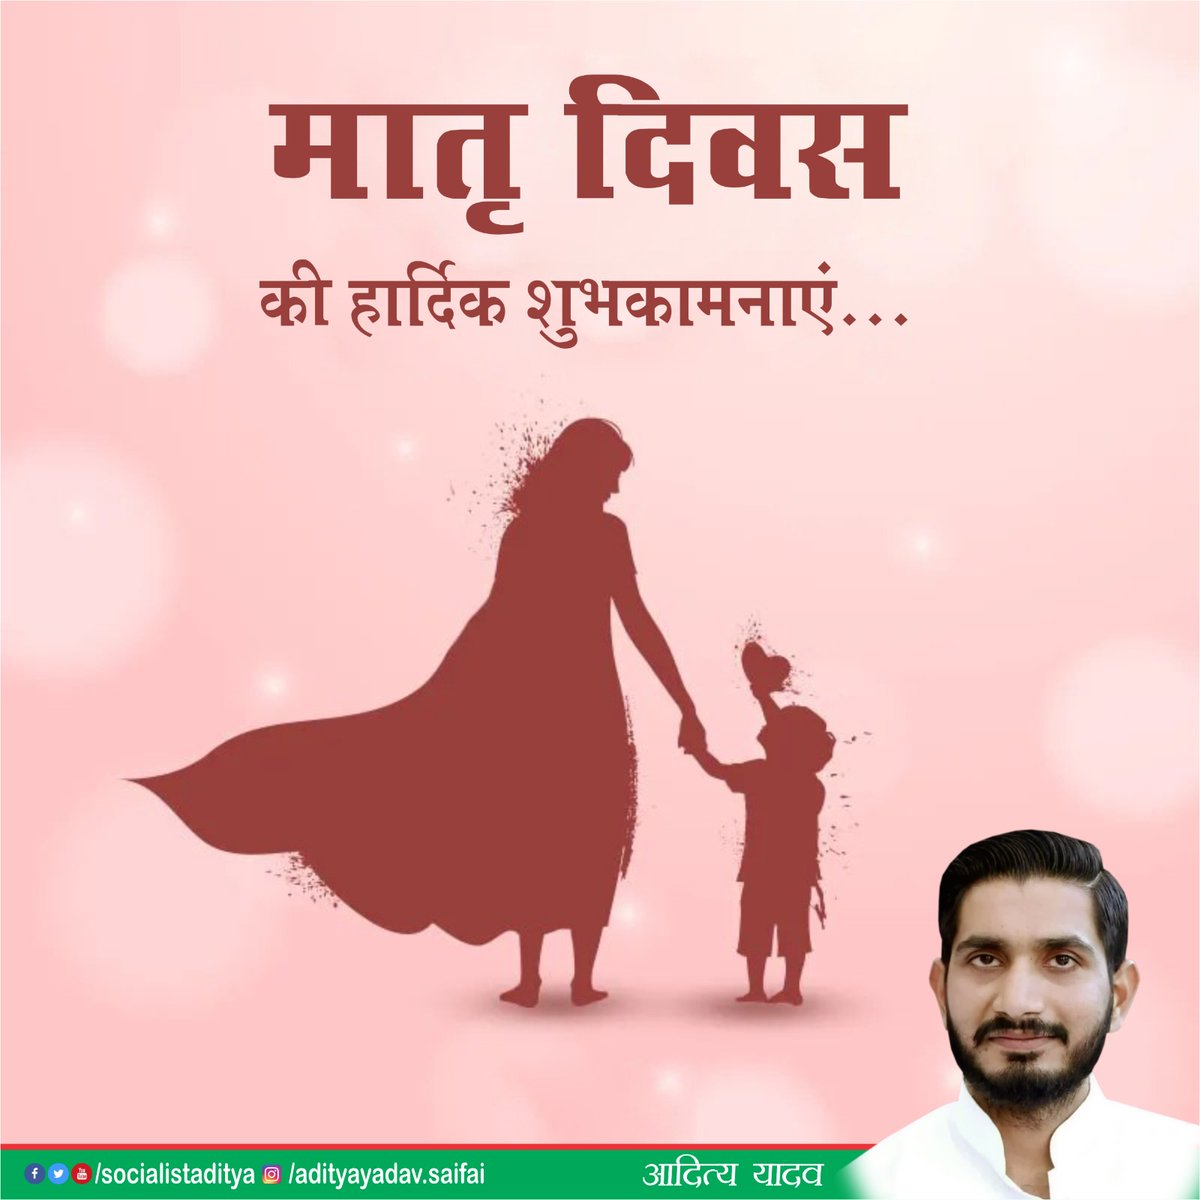 मातृ दिवस की हार्दिक शुभकामनाएं... #MothersDay